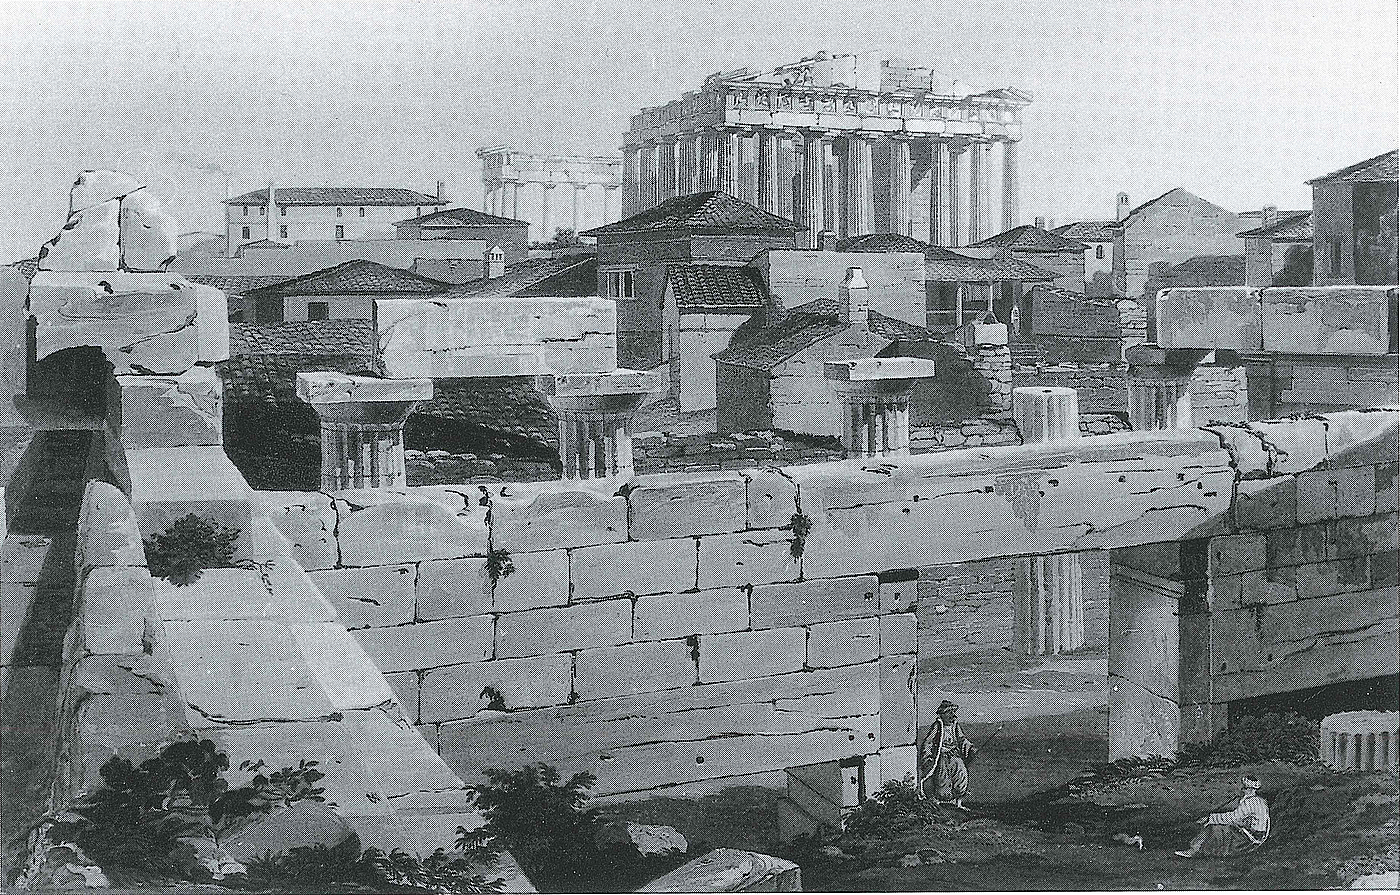 Edward Dodwell: Akropolis plateauet med Parthenon og nyere tids bebyggelse set fra Propylceerne, Athen, 1821